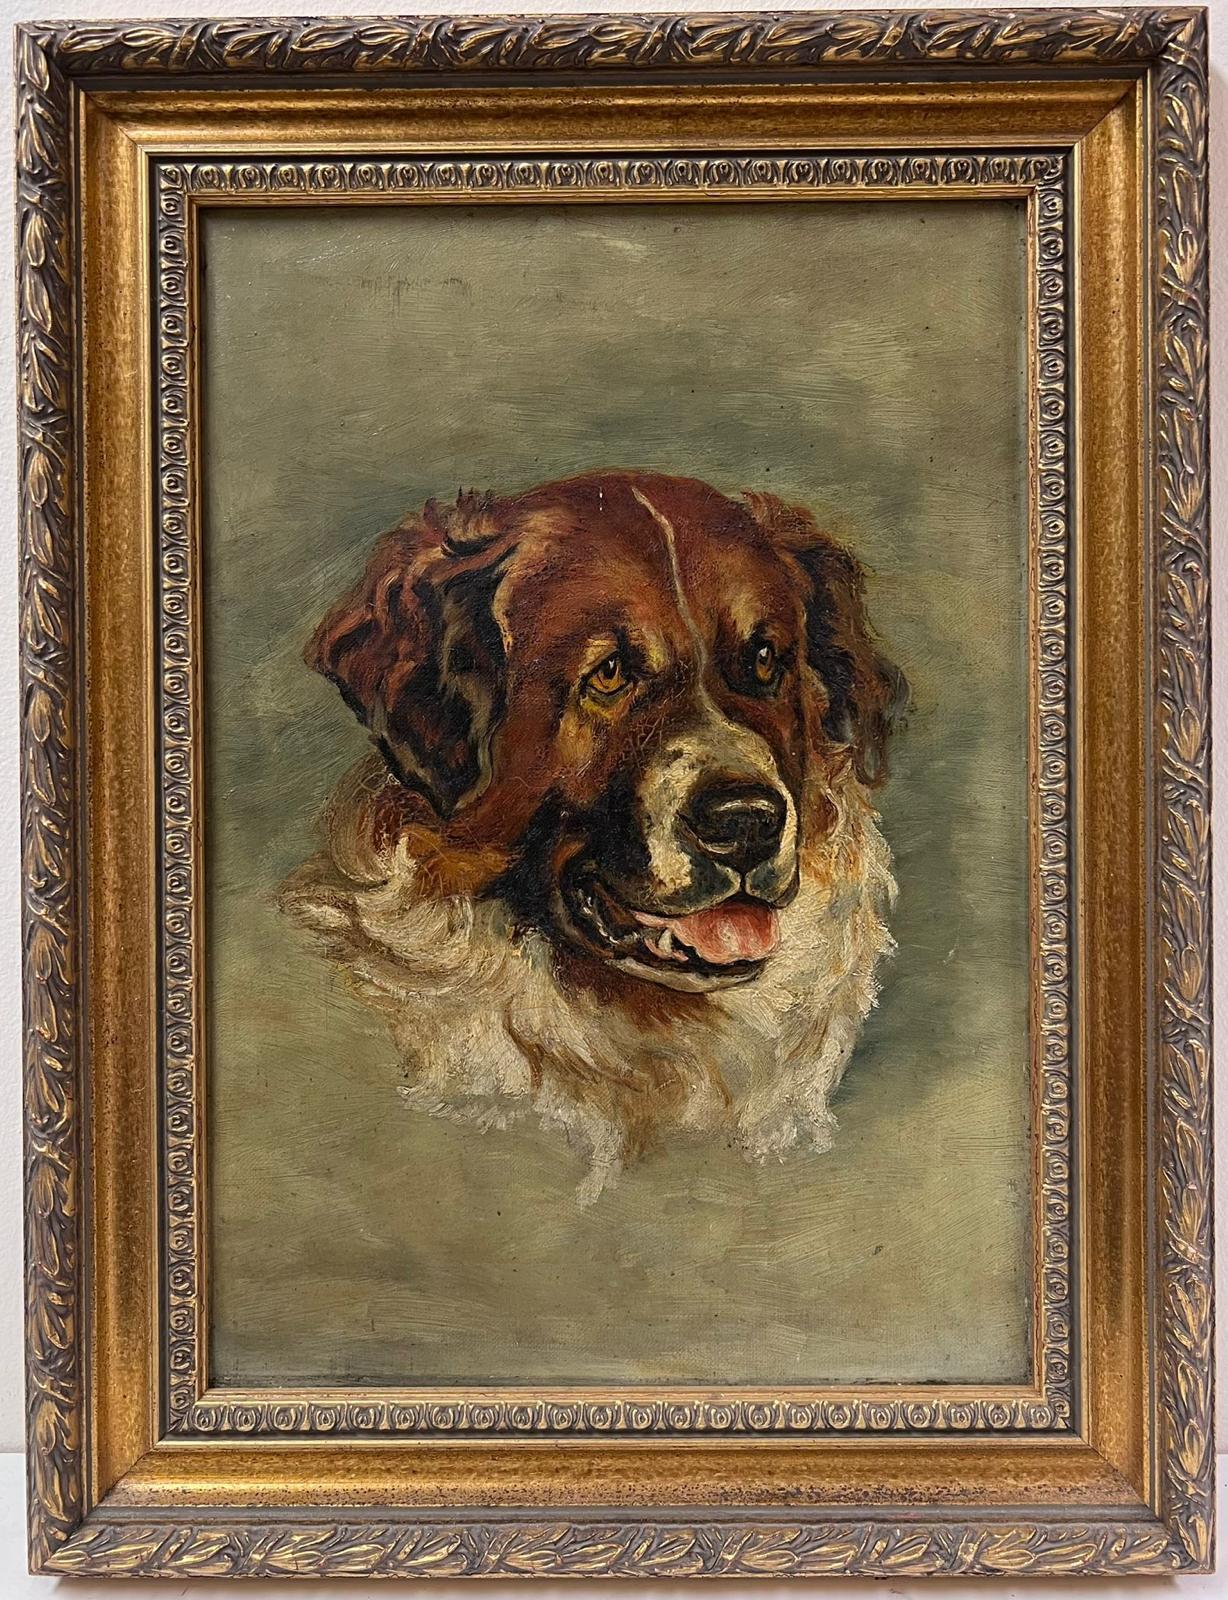 Antique English artist Portrait Painting – Kopfporträt eines Hundes St. Bernard? Antikes englisches Ölgemälde auf Leinwand